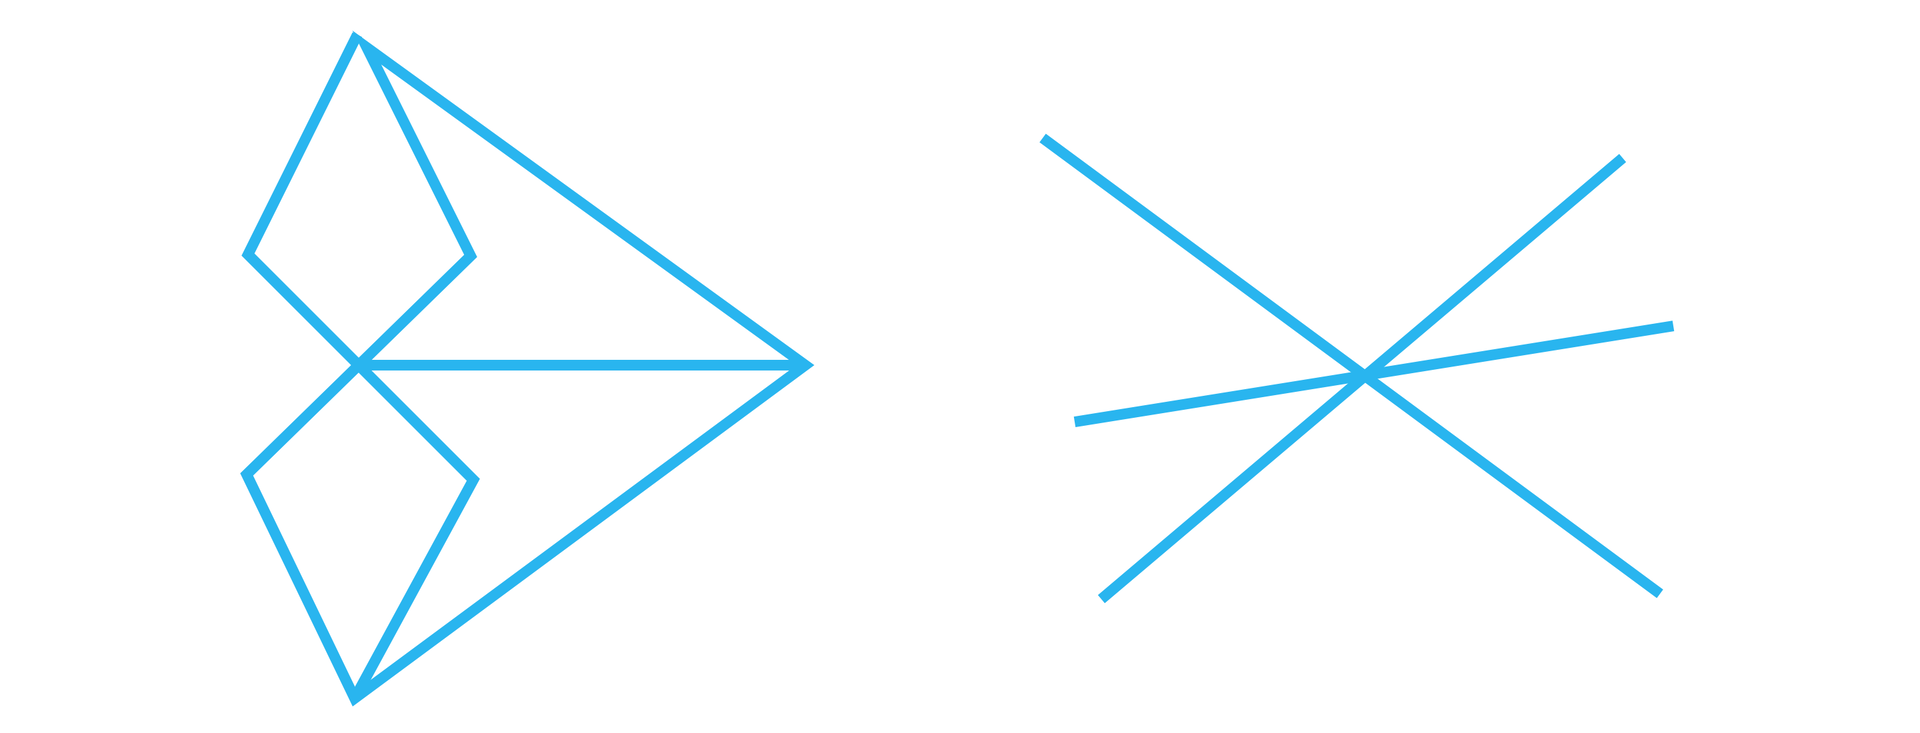 Ilustracja prezentuje dwie figury nie będącymi łamanymi. Pierwsza z nich składa się z dwóch deltoidów symetrycznych względem górnego wierzchołka dolnej  figury. Z punktu symetrii obu deltoidów poprowadzony został w prawo poziomy odcinek, z którego końca poprowadzono dwa odcinki łączące wierzchołki symetrycznych deltoidów, które znajdują się na przeciwko wierzchołków znajdujących się w puncie symetrii. Druga figura zbudowana jest natomiast z trzech przecinających się w jednym punkcie prostych. 